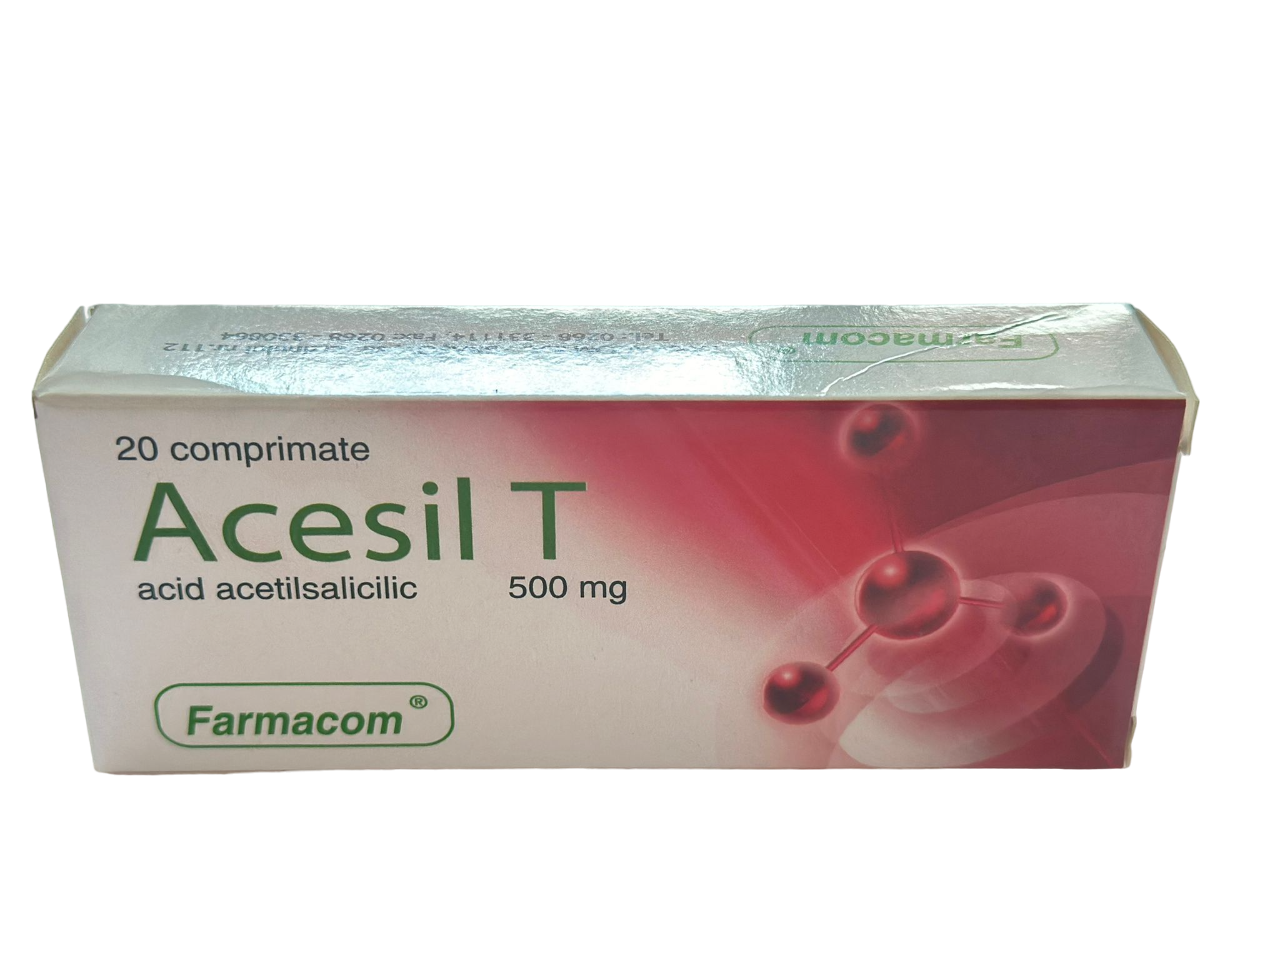 Medicamente fara reteta (OTC) - Acesil T, 500 mg, 20 comprimate, Farmacom, farmacom.ro